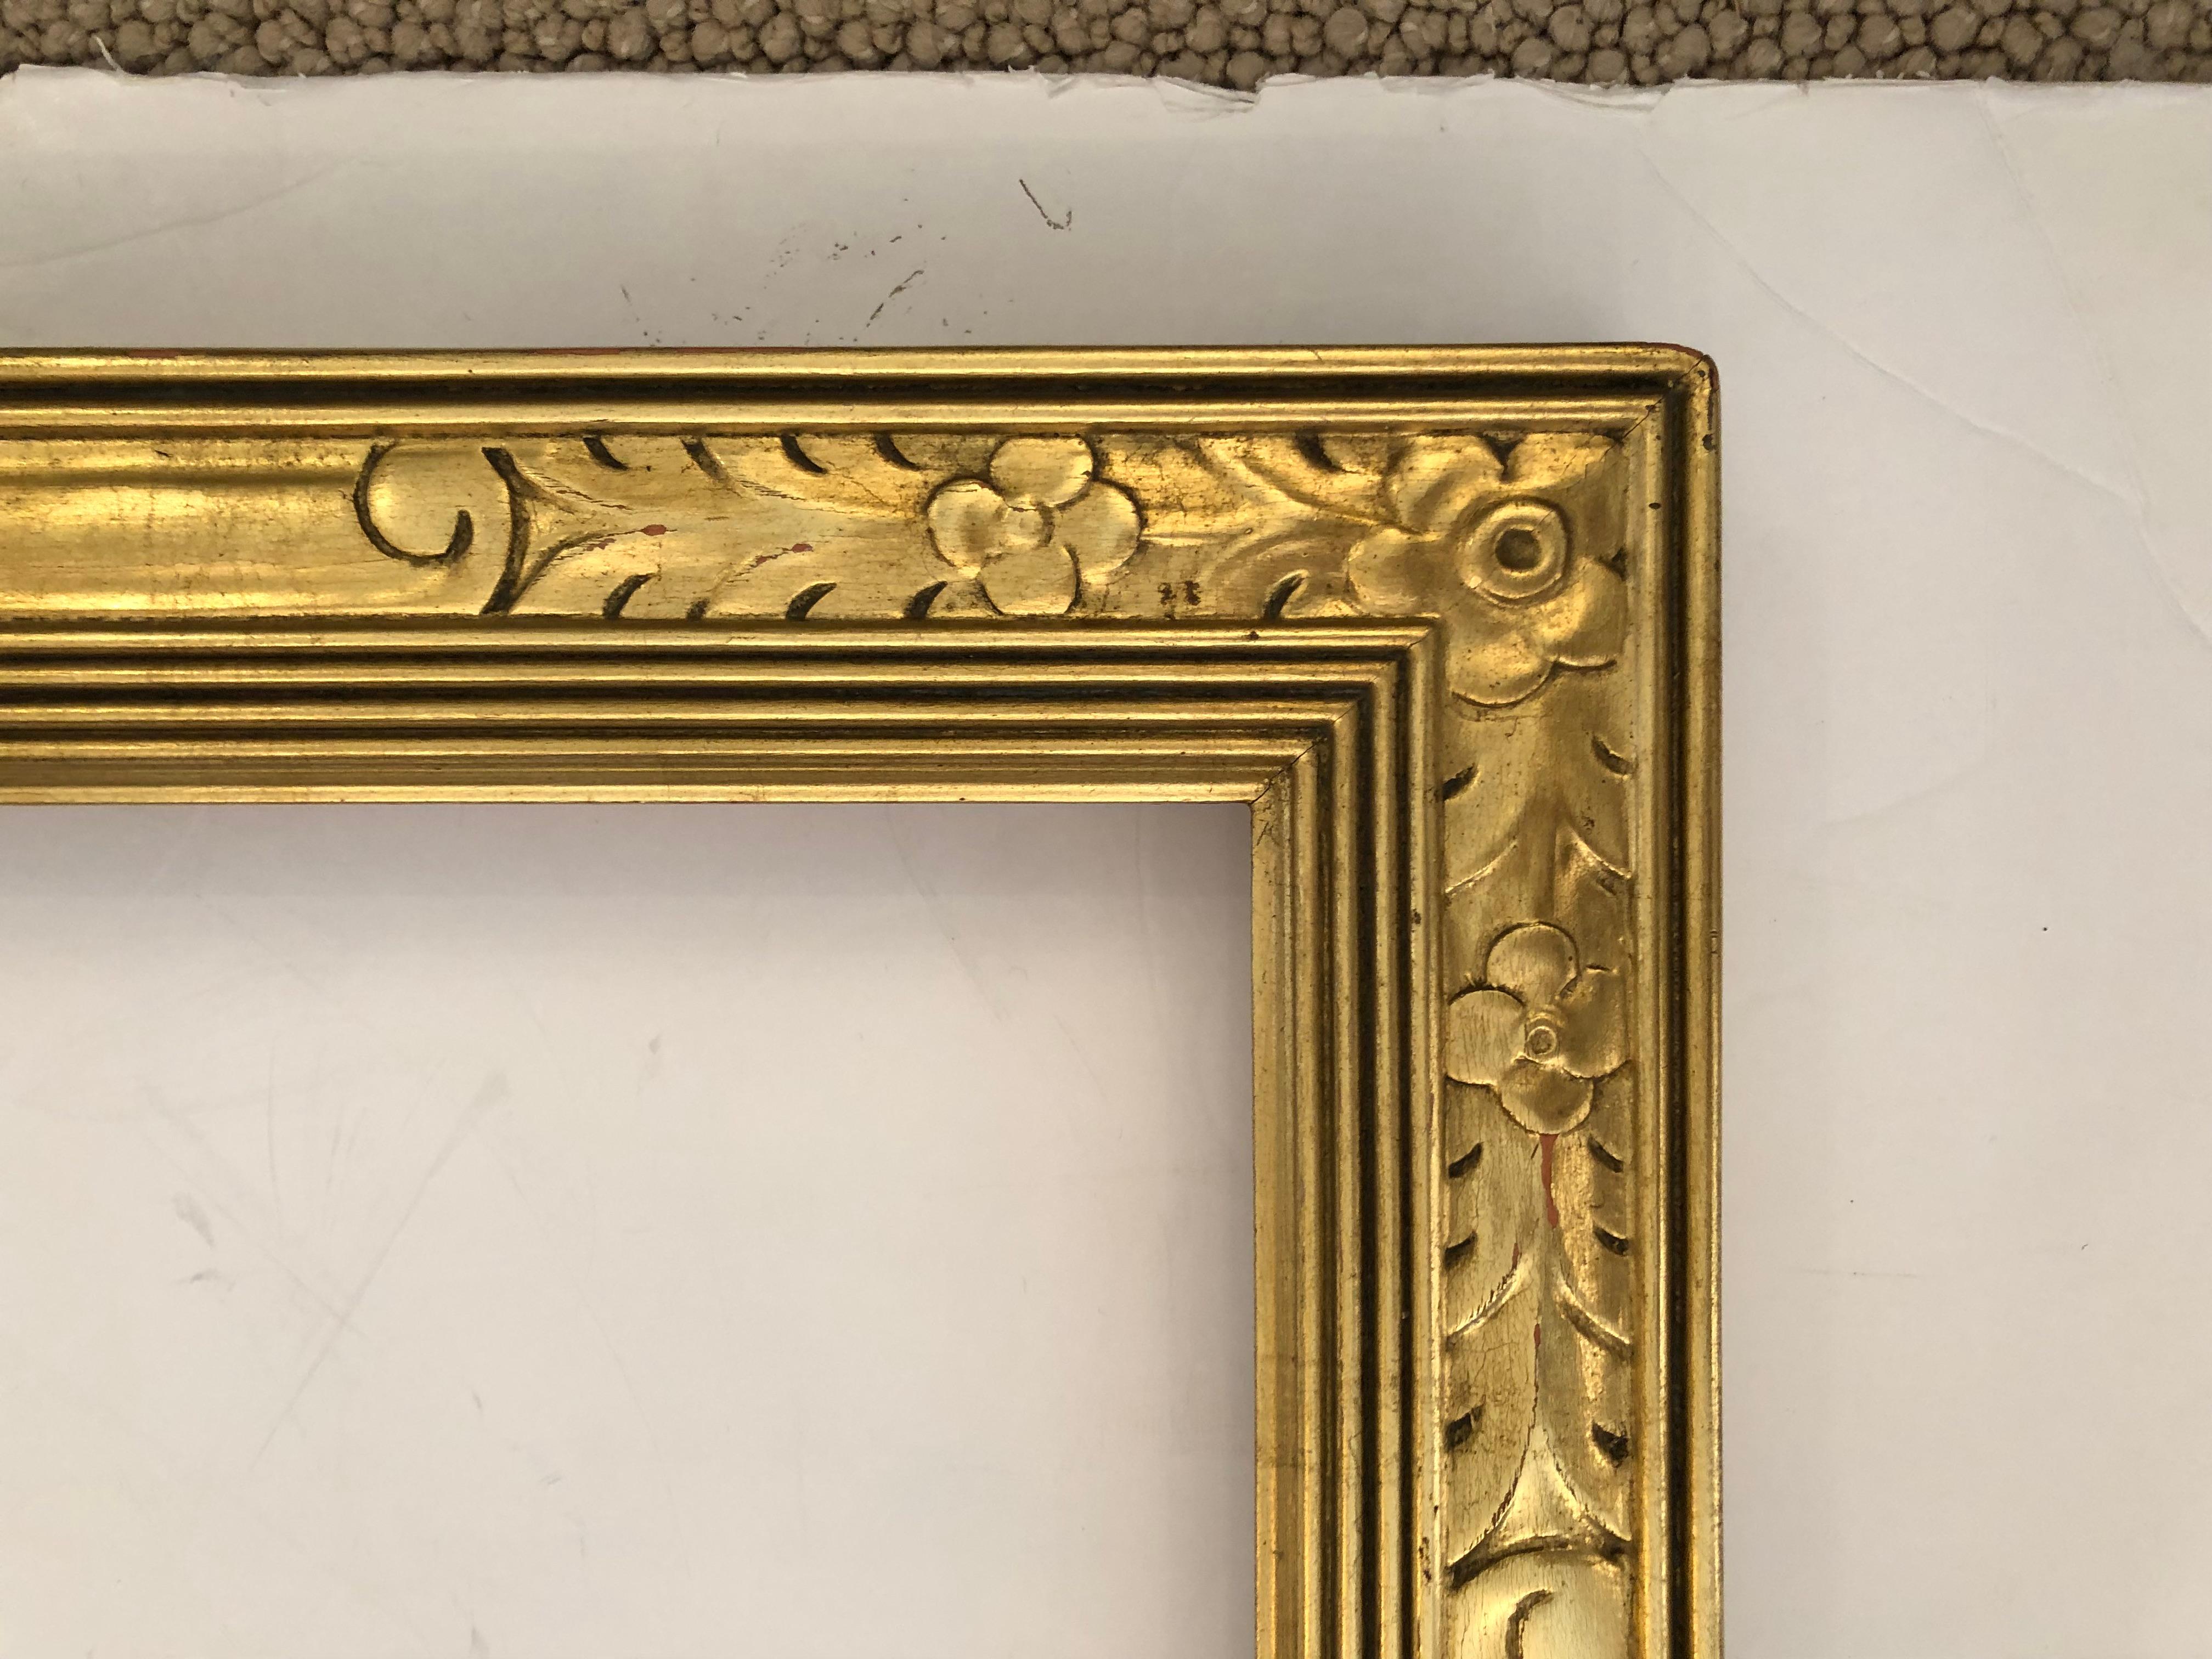 Grand et beau cadre Newcomb Macklin doré avec un design Art Nouveau précoce.
Peut être suspendu verticalement ou horizontalement ; ferait un magnifique miroir.

